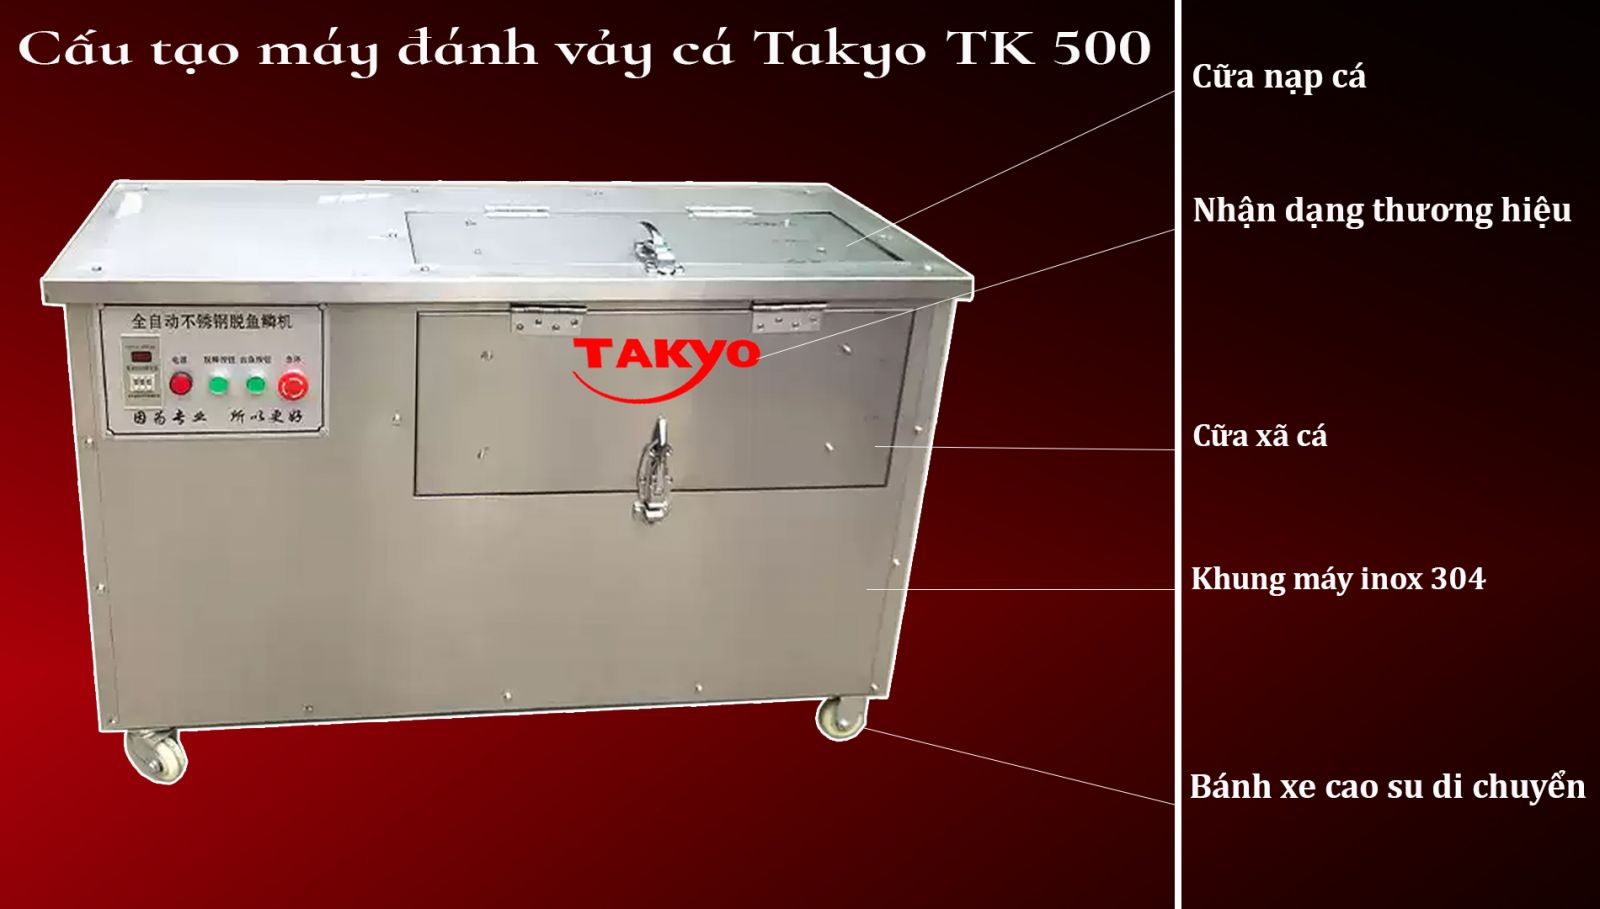 Cấu tạo máy đánh vảy cá Takyo Tk500